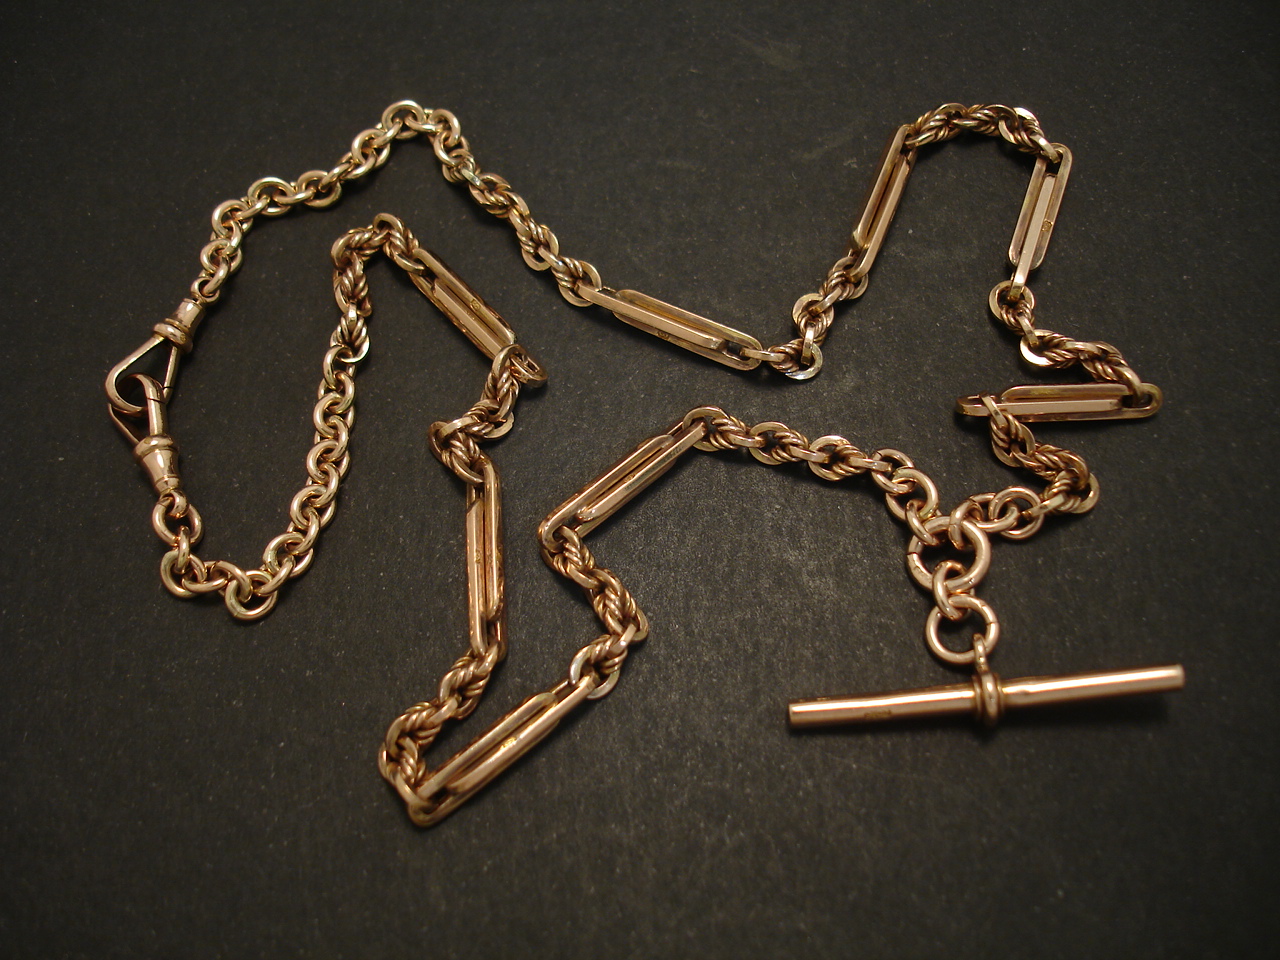 Alchemia Handcrafted Chain | Charles Albert Jewelry - Charles Albert Inc